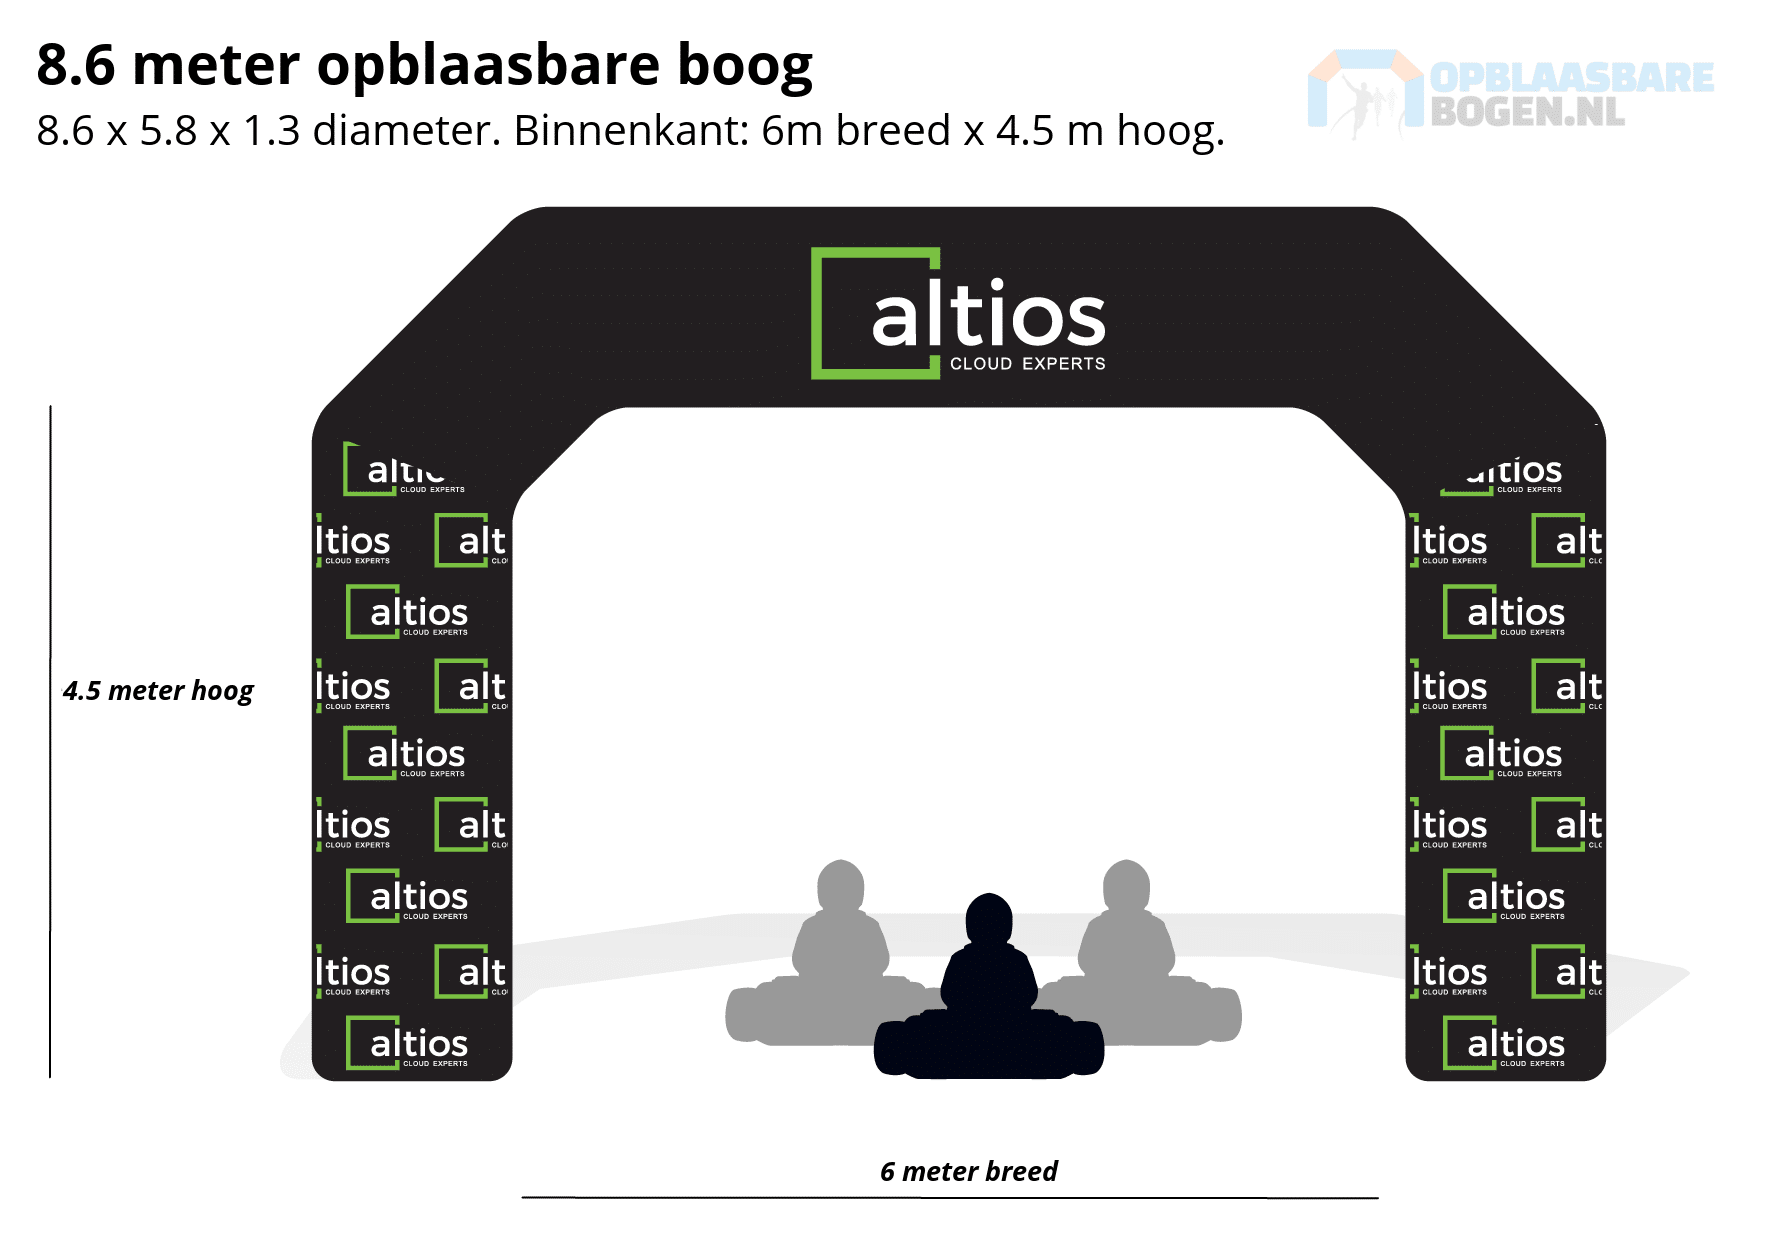 Ontwerp 8.6 meter Opblaasbare boog voor Altios -Opblaasbarebogen.nl-